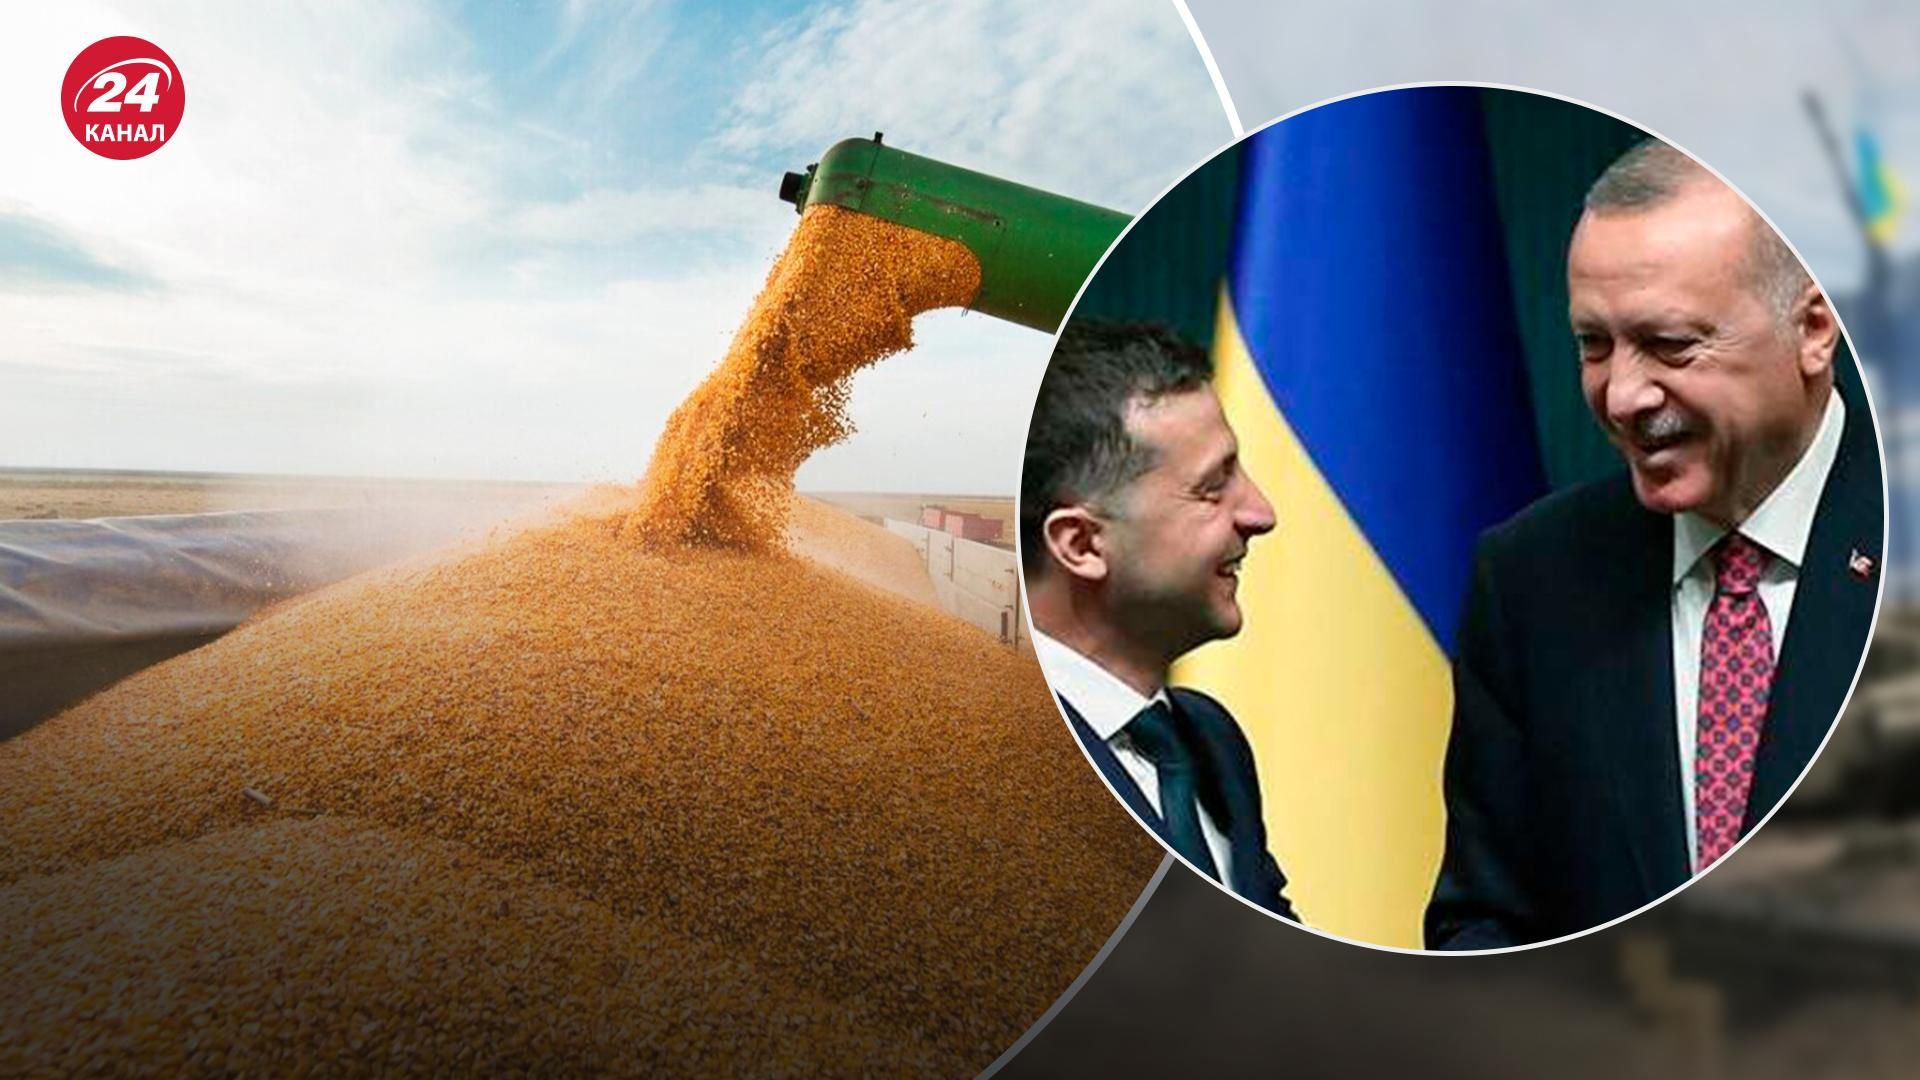 Піонтковський відповів, чи можуть українці довіряти Ердогану в питаннях зерна